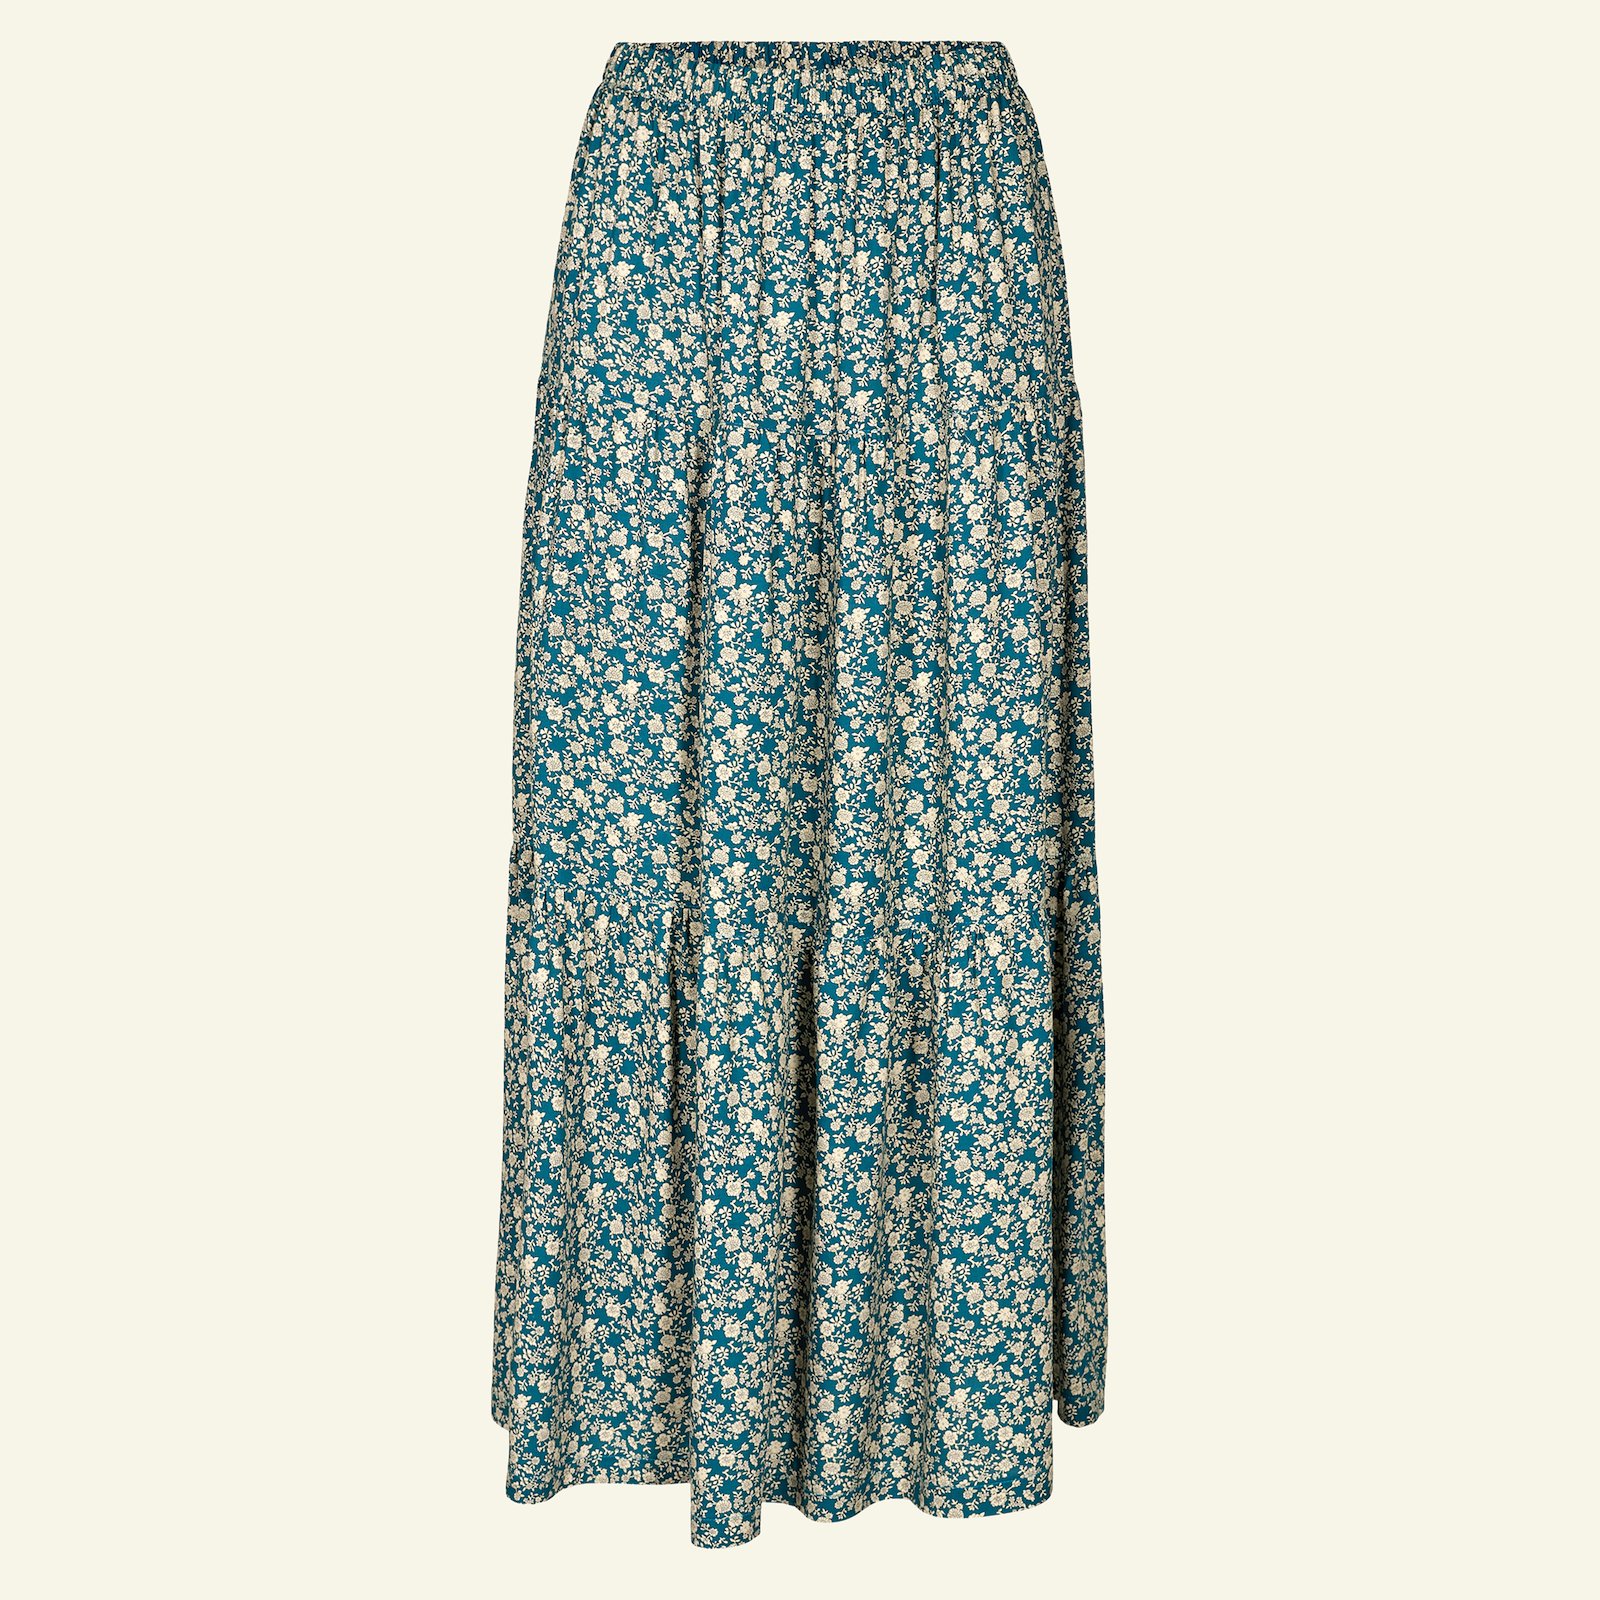 Split level skirt, XL p21046_710580_sskit